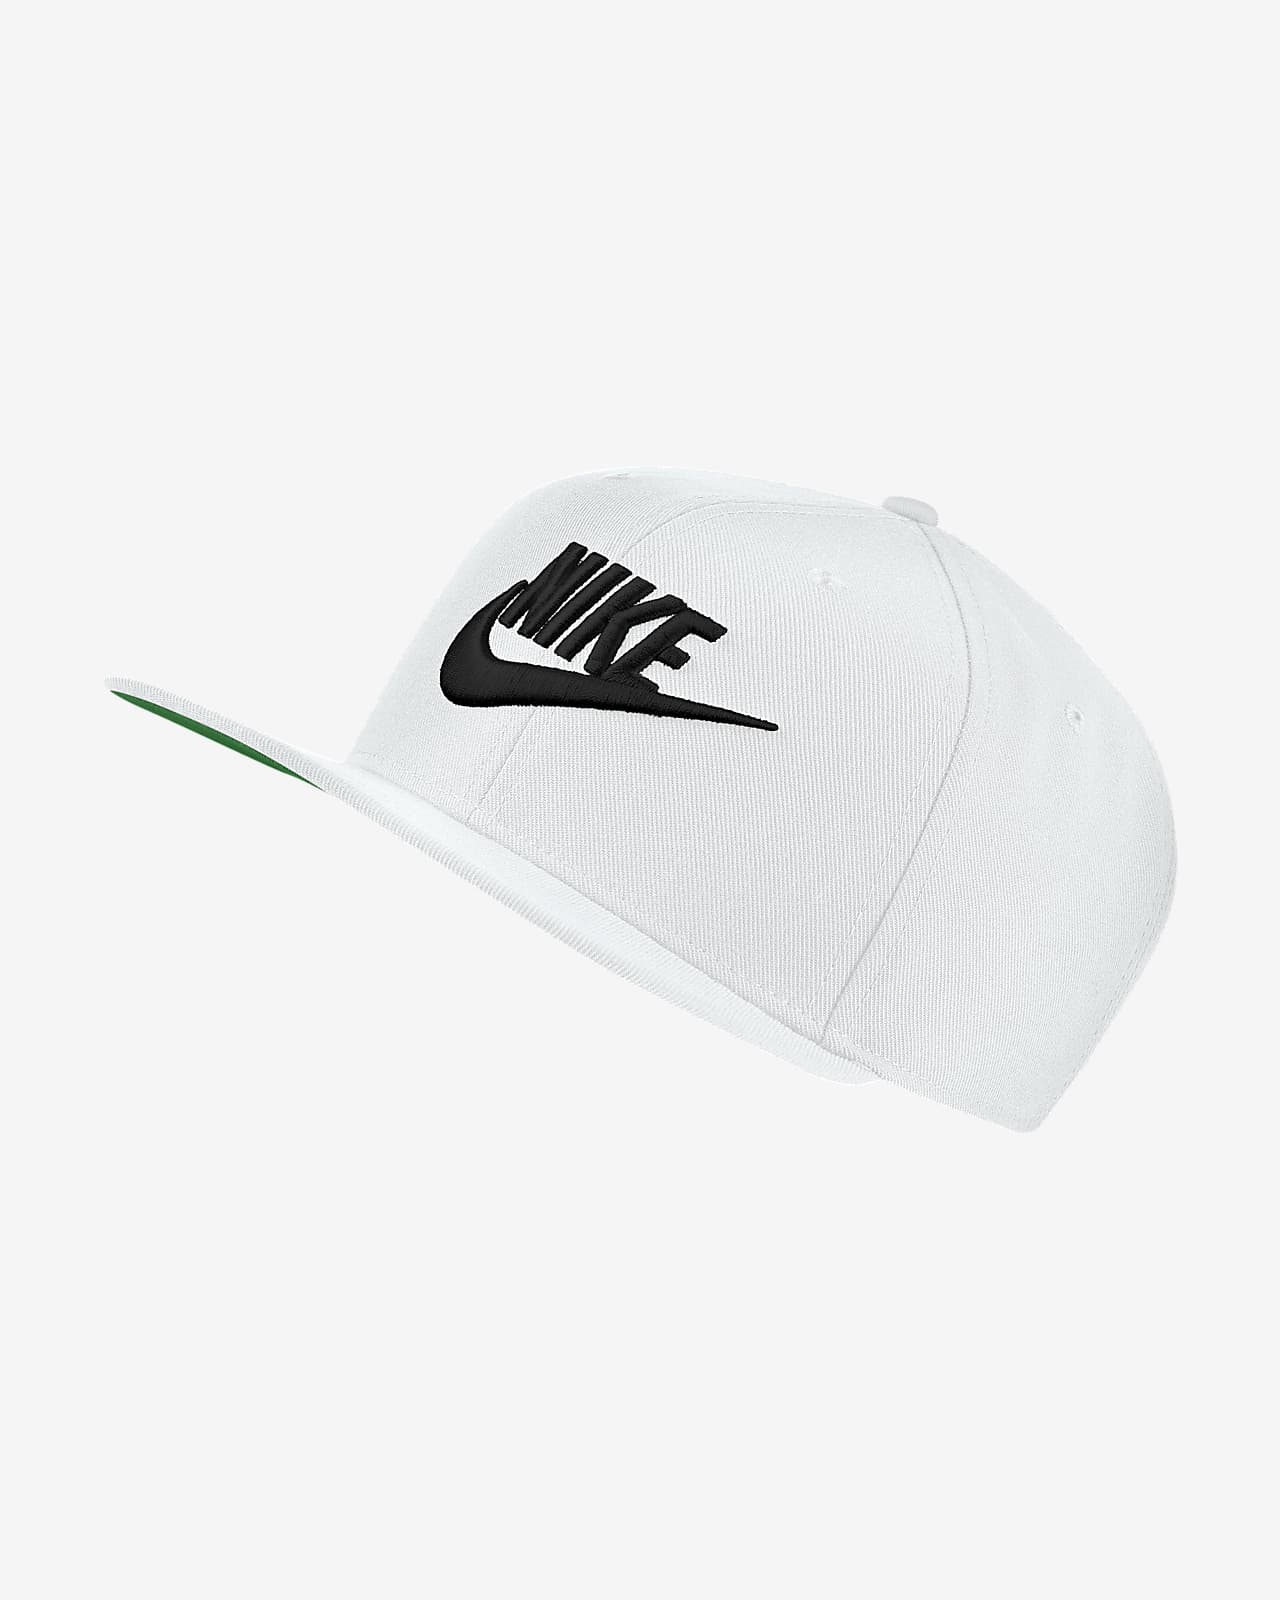 Nike Sportswear Dri-FIT Pro Futura Adjustable Cap